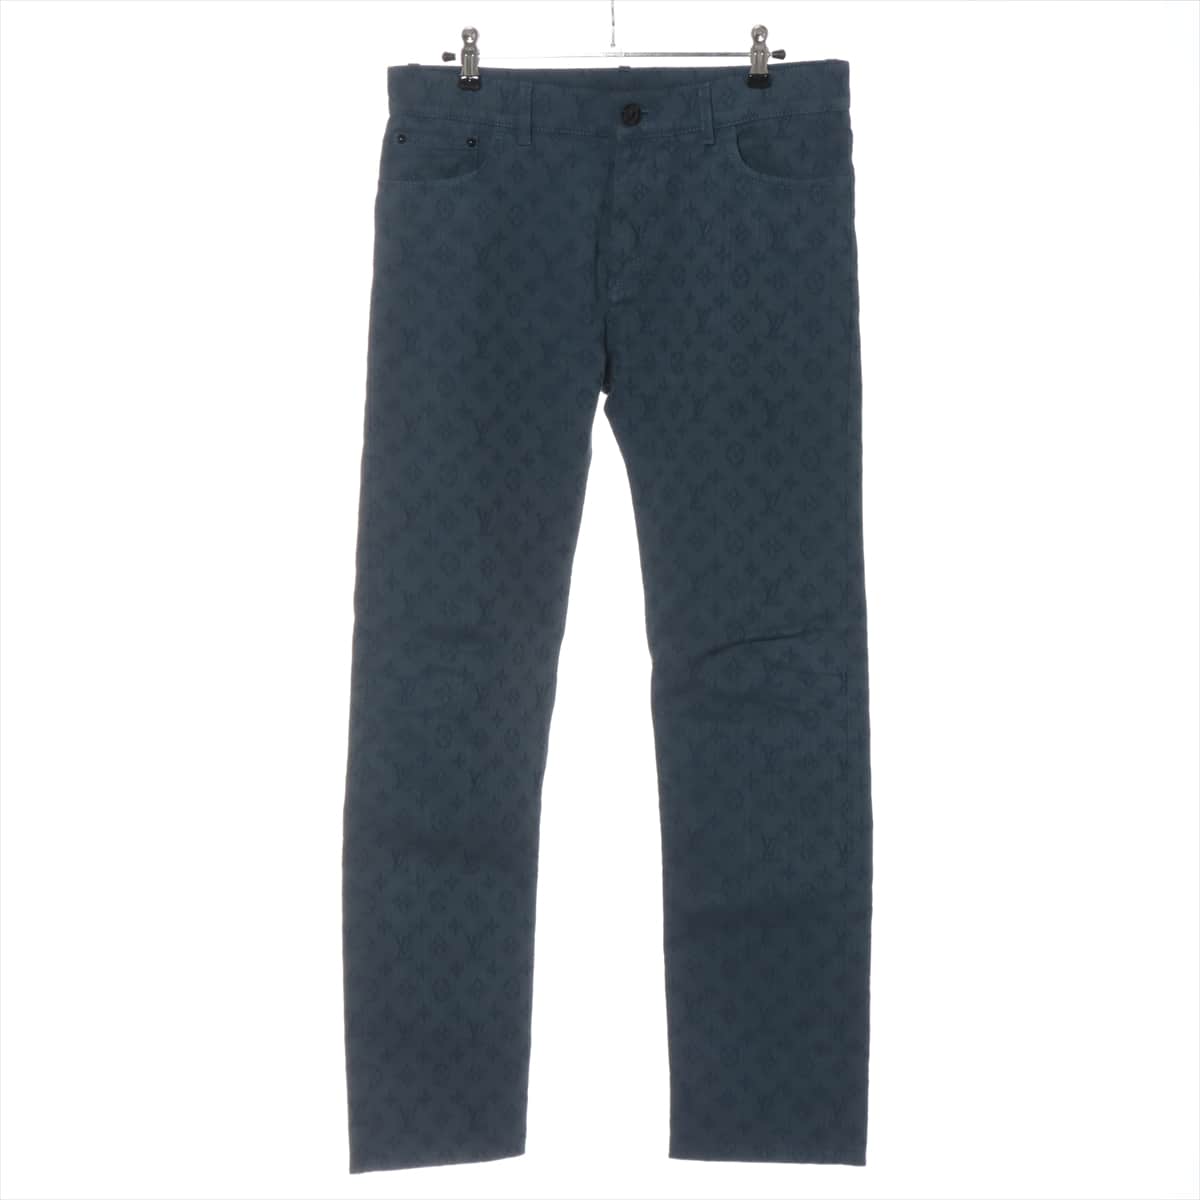 Louis Vuitton 19-year Cotton Denim pants 29 Men's Blue  RM192M monogram jacquard